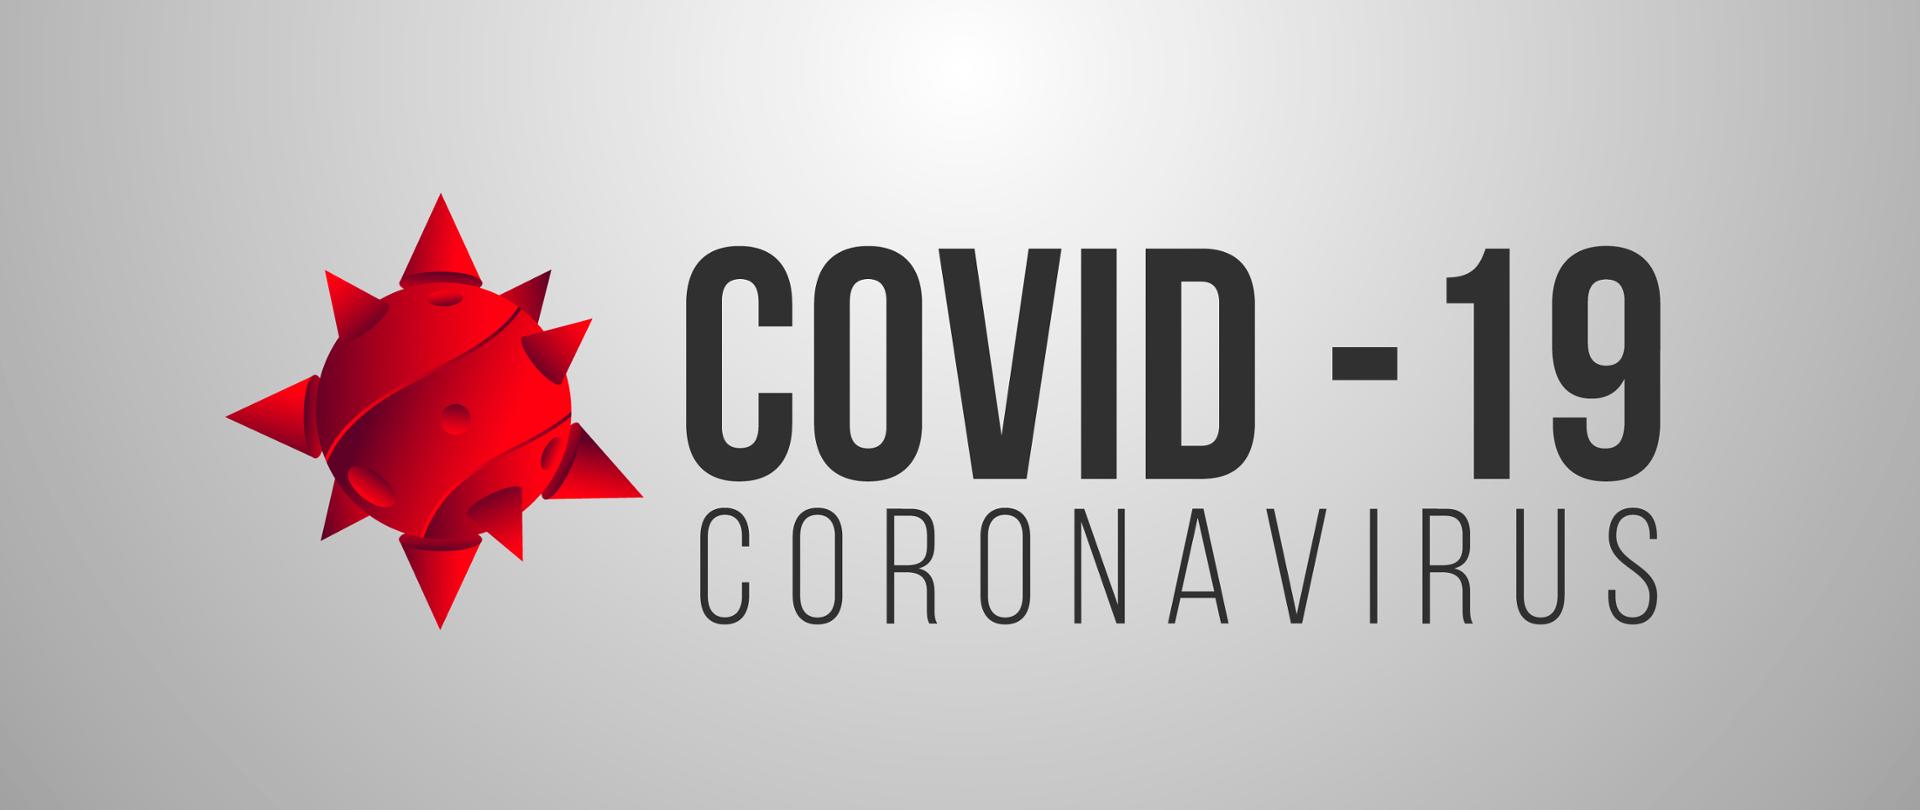 zdjęcie przedstawia symbolicznie virusa jako czerwoną kulę z kolcami z napisem COVID-19 CORONAVIRUS